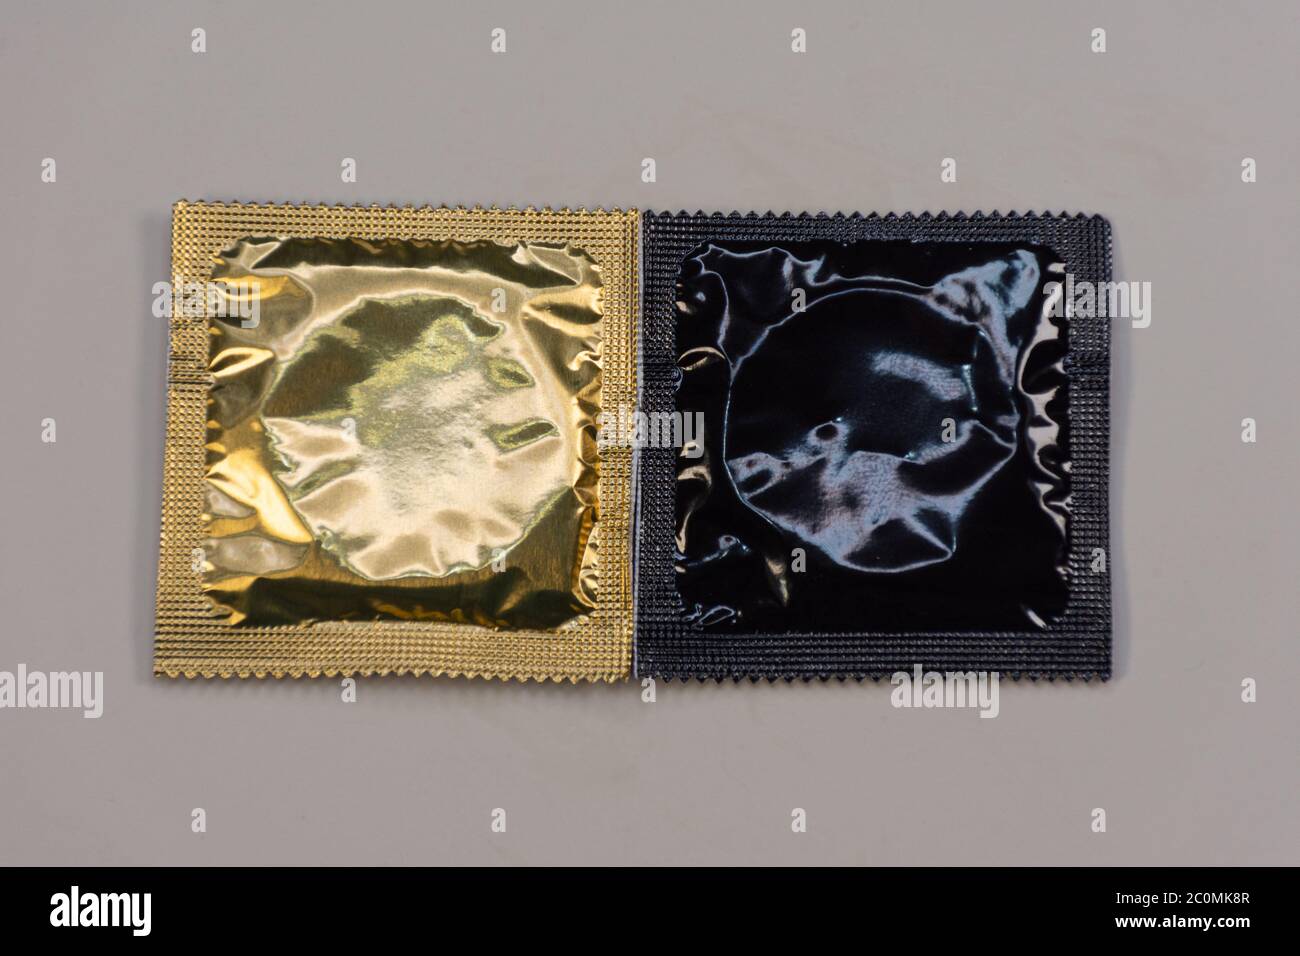 Affichage des préservatifs colorés soigneusement disposés sur une plate-forme Banque D'Images